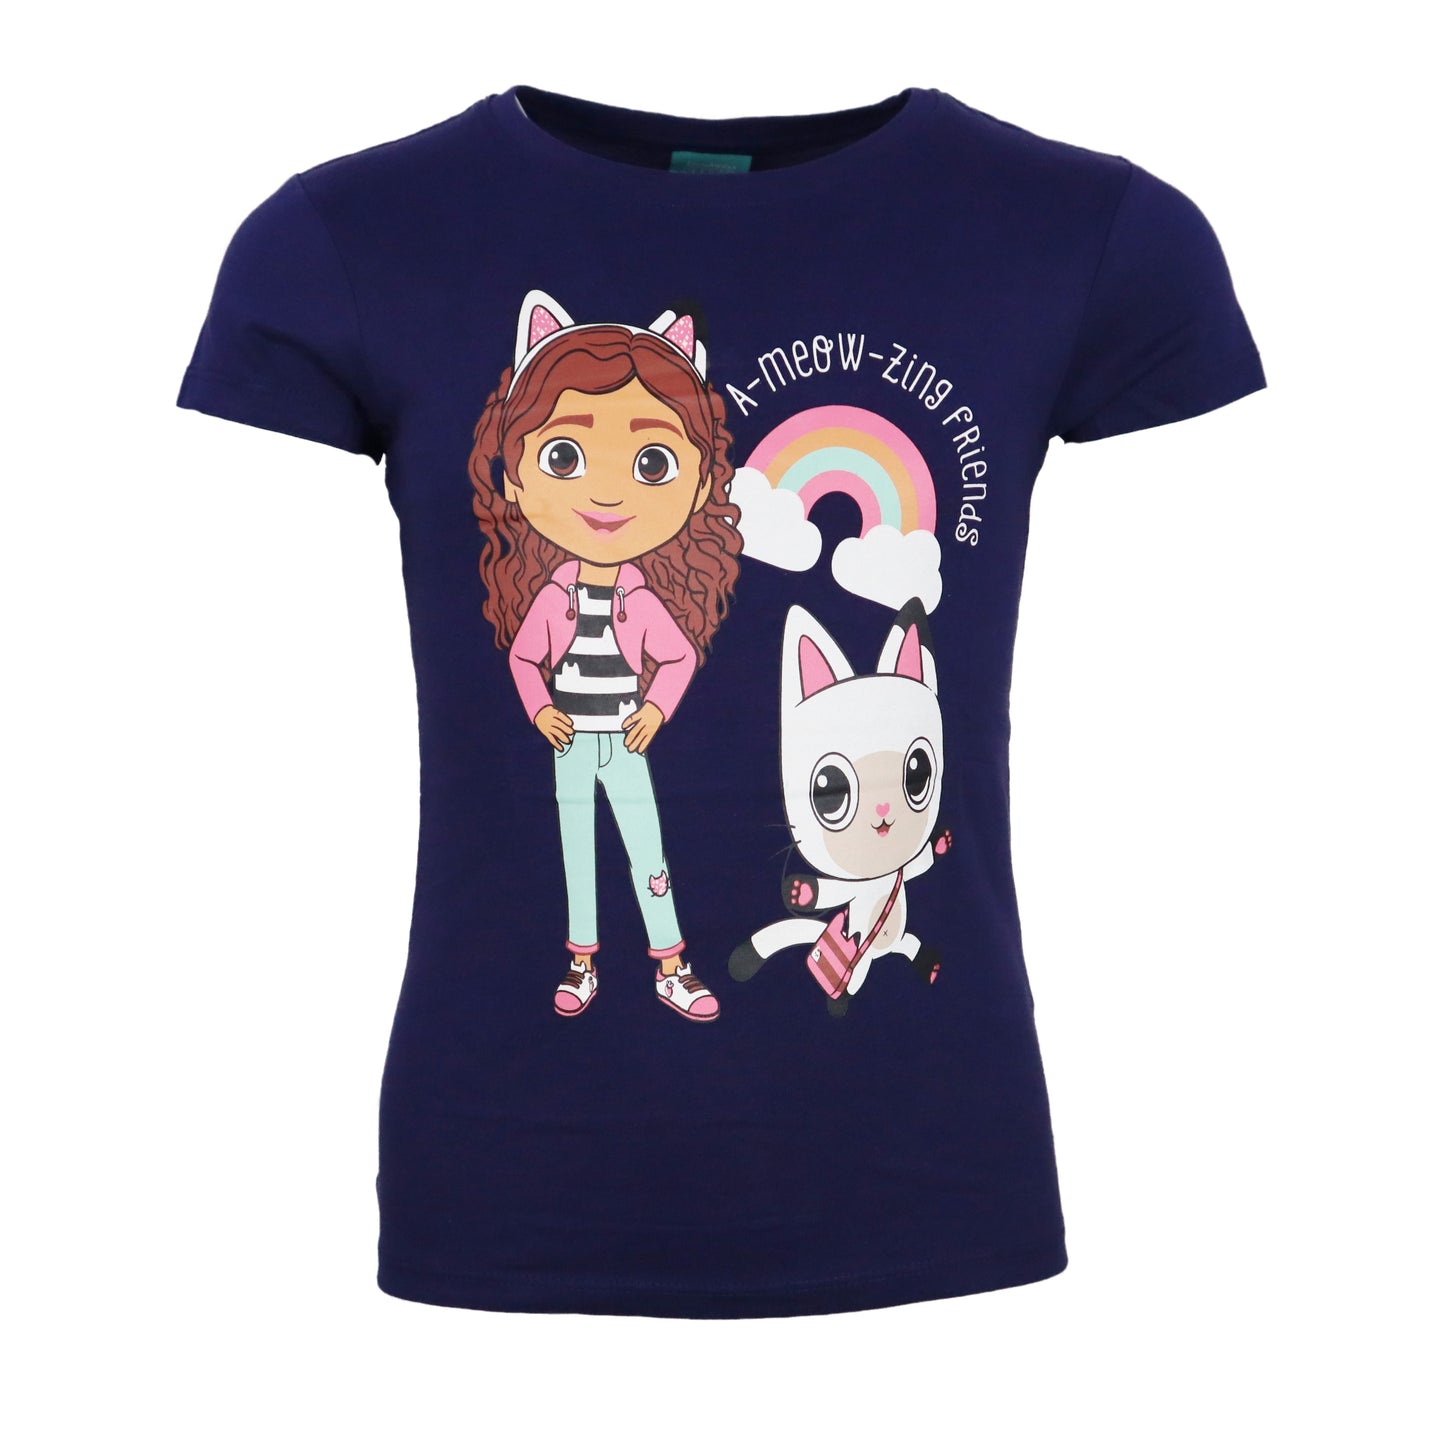 Gabbys Dollhouse Mädchen Kinder T-Shirt Shirt